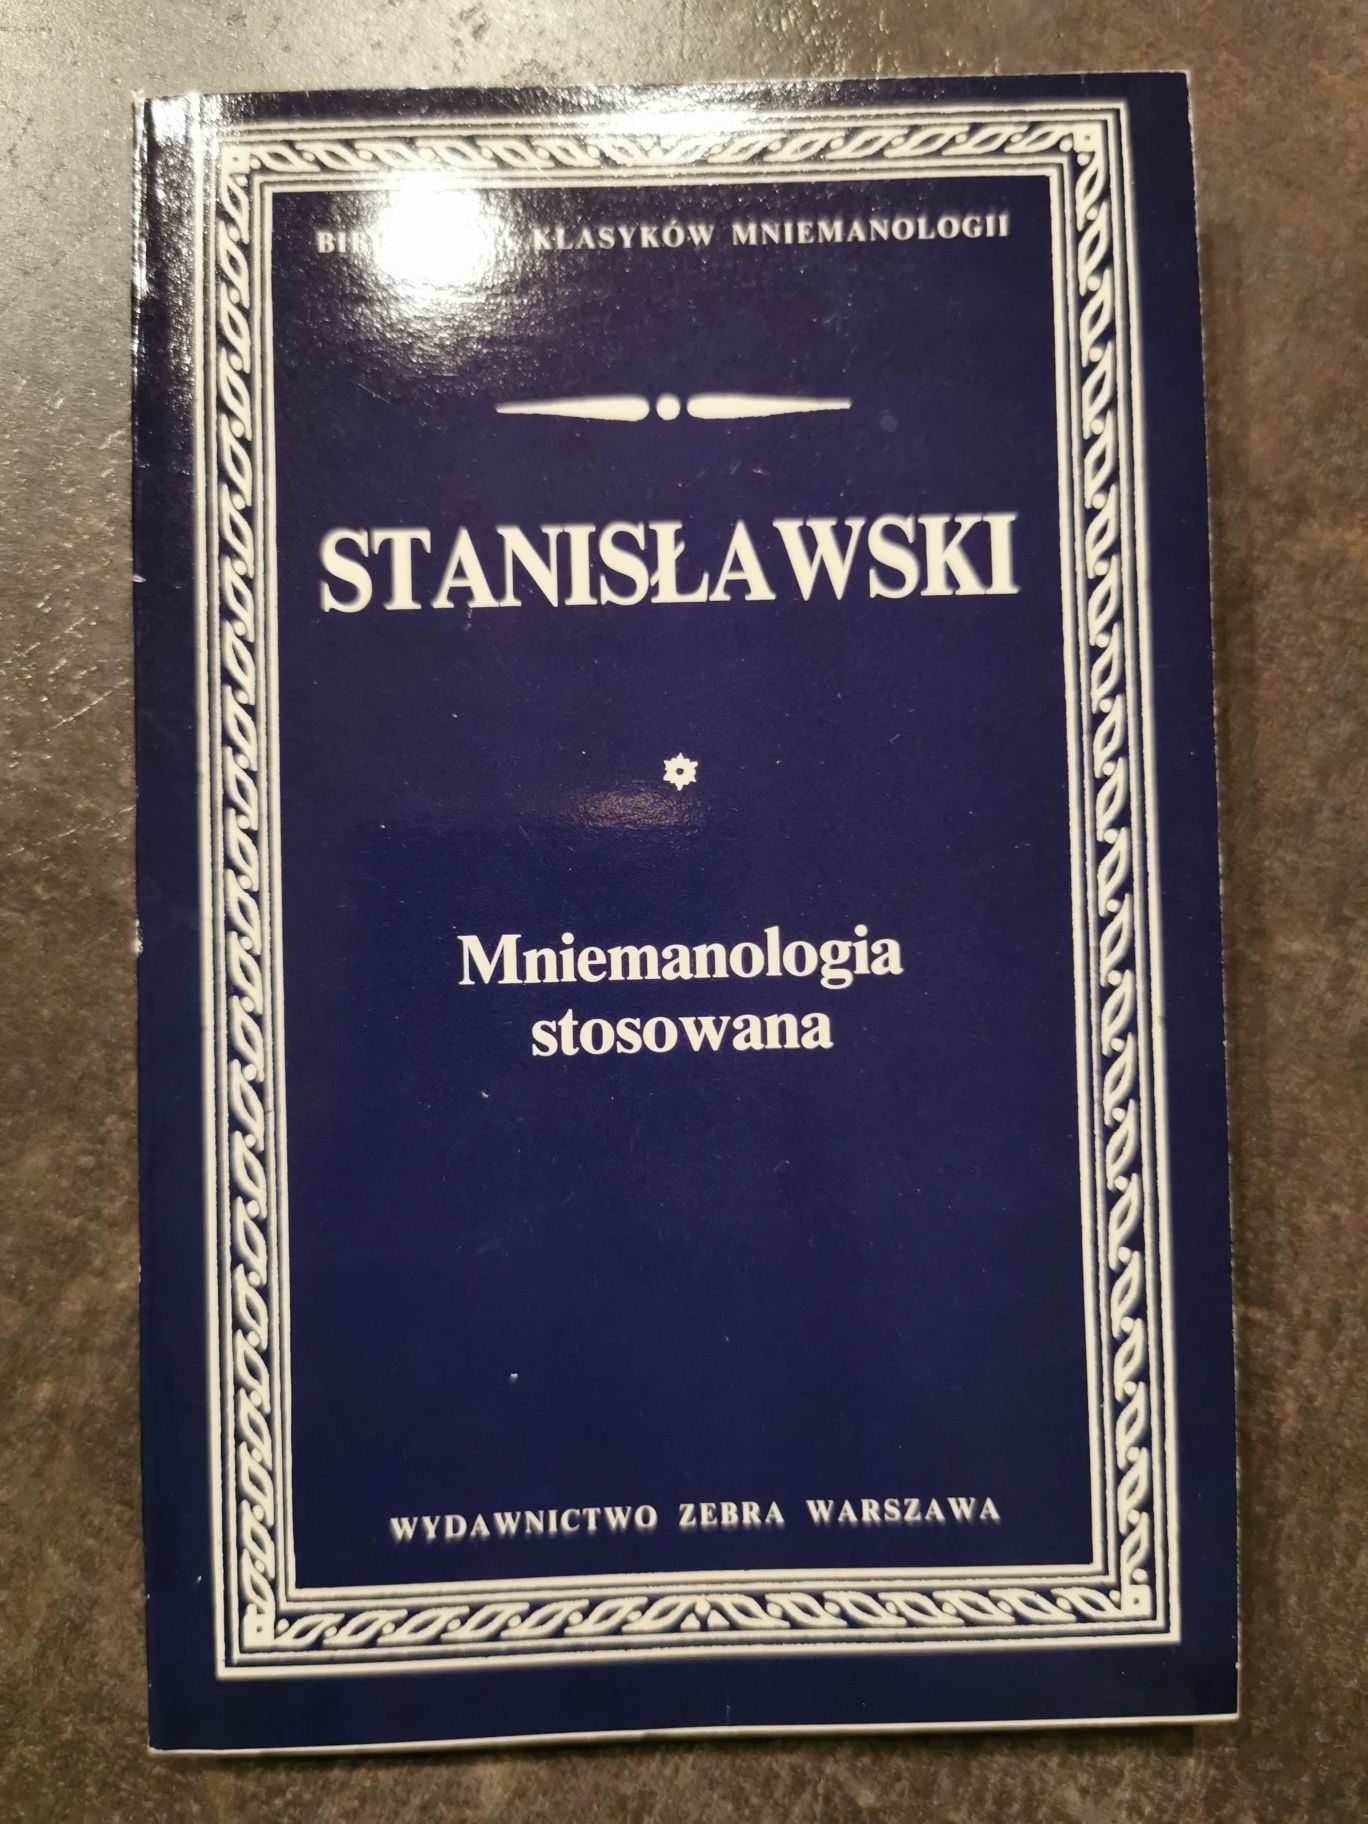 Mniemanologia stosowana Stanisławski Wydawnictwo Zebra